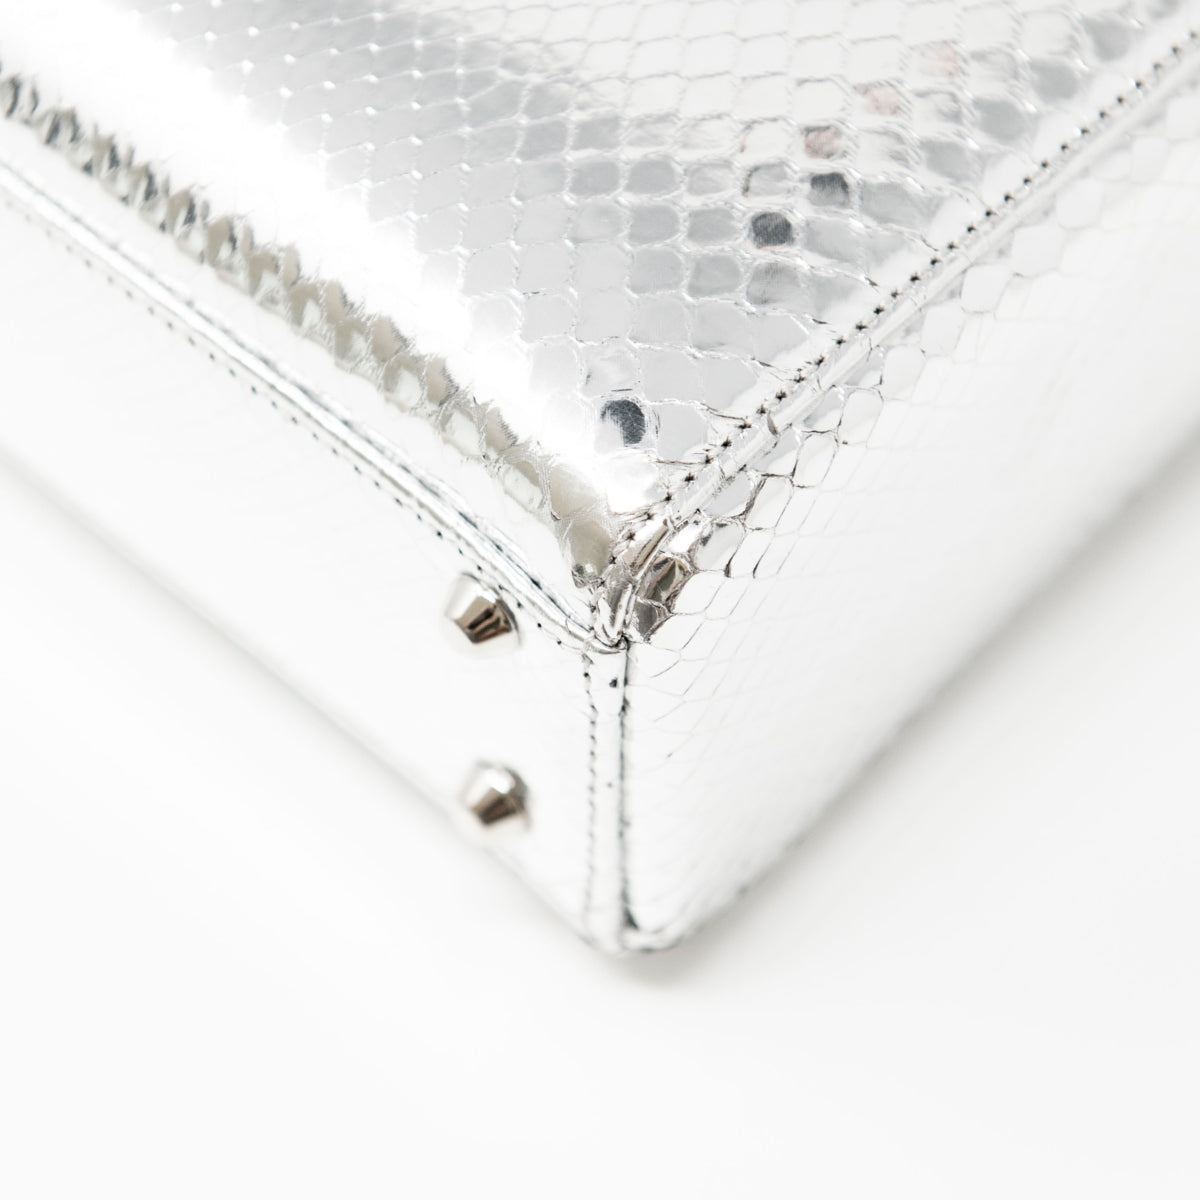 Dior Silver Python Mini Lady Dior Bag